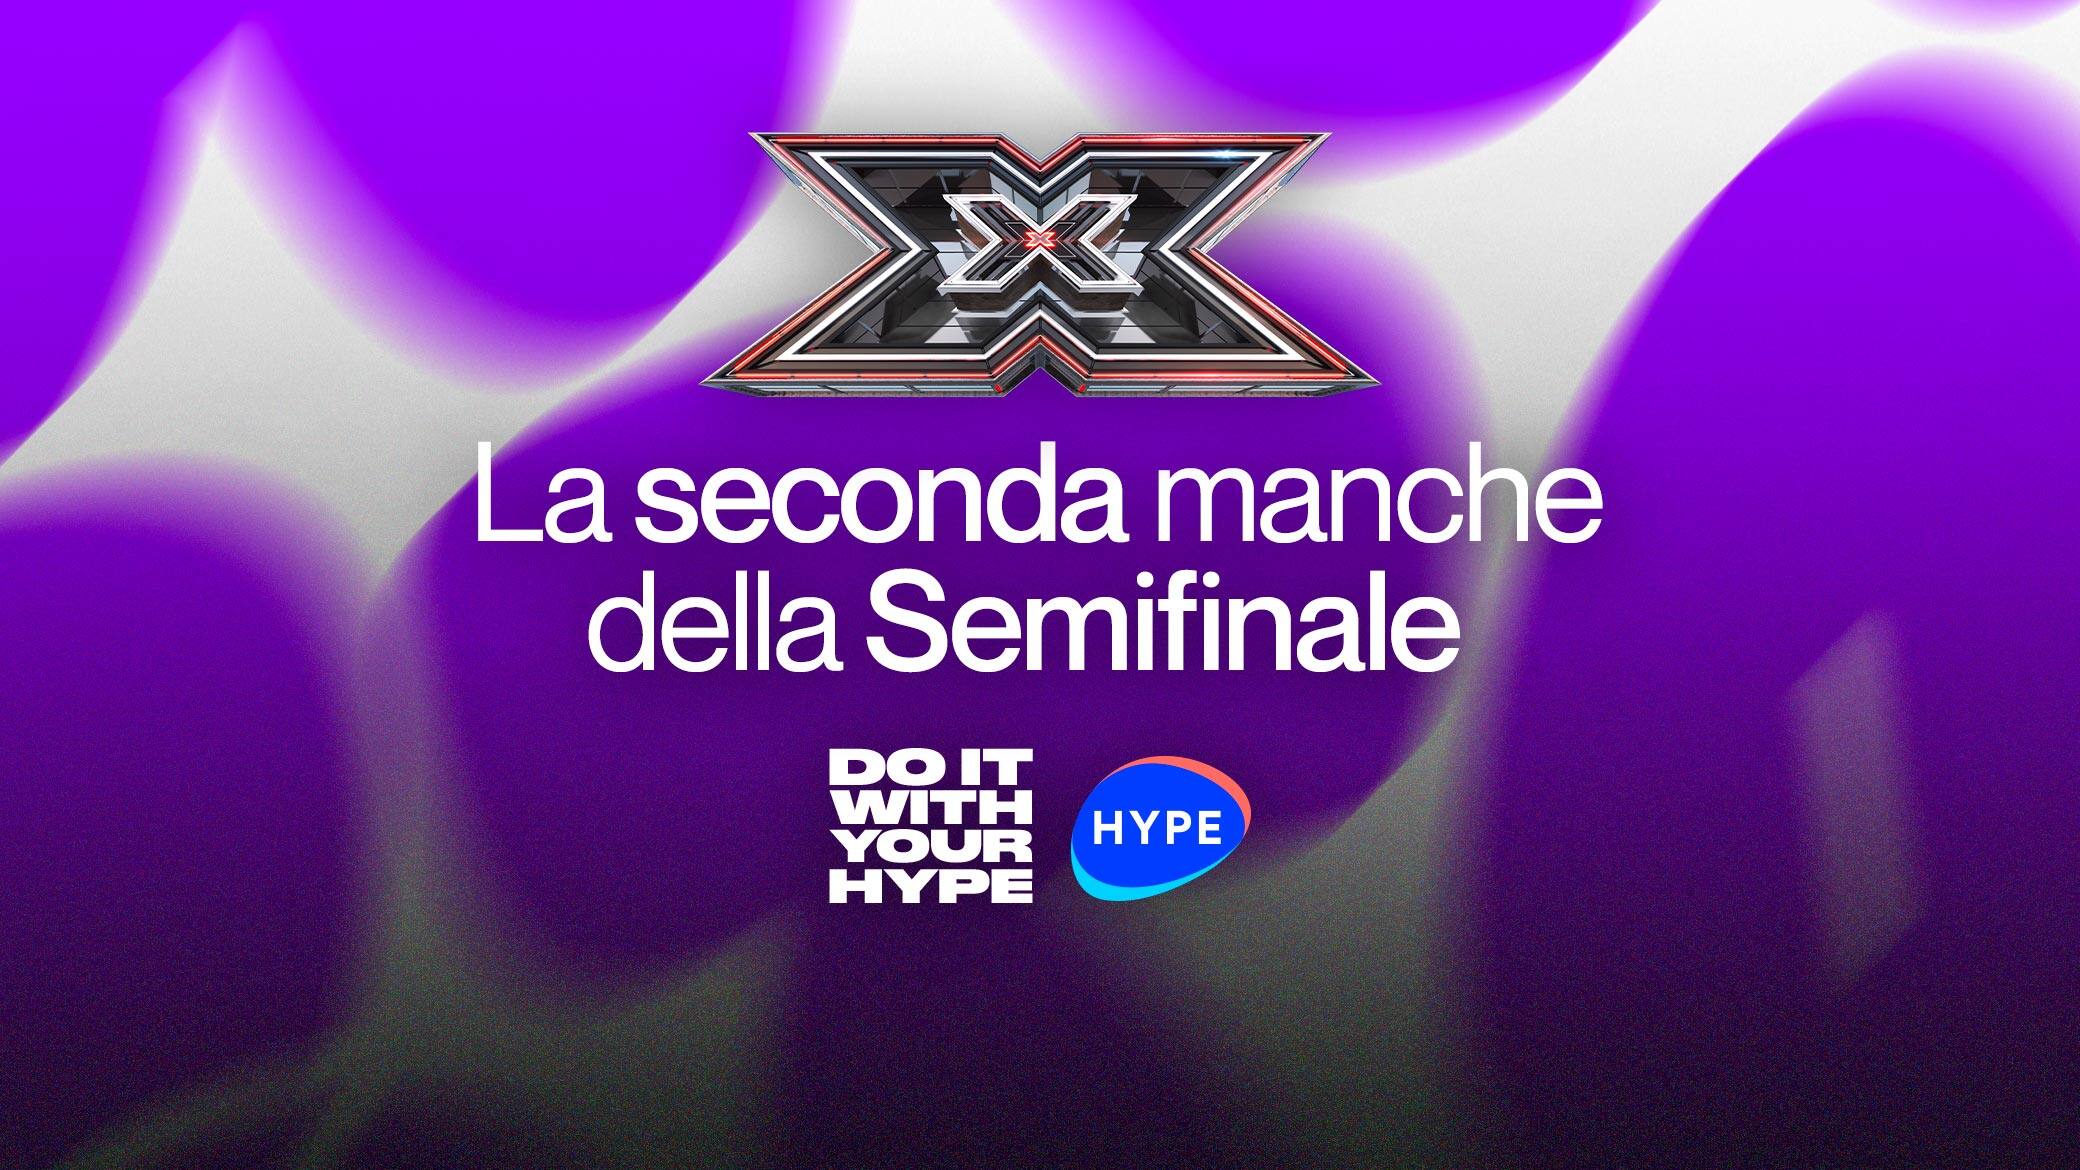 X Factor 2022, i concorrenti sceglieranno da soli la loro performance della seconda Manche della Semifinale con Hype